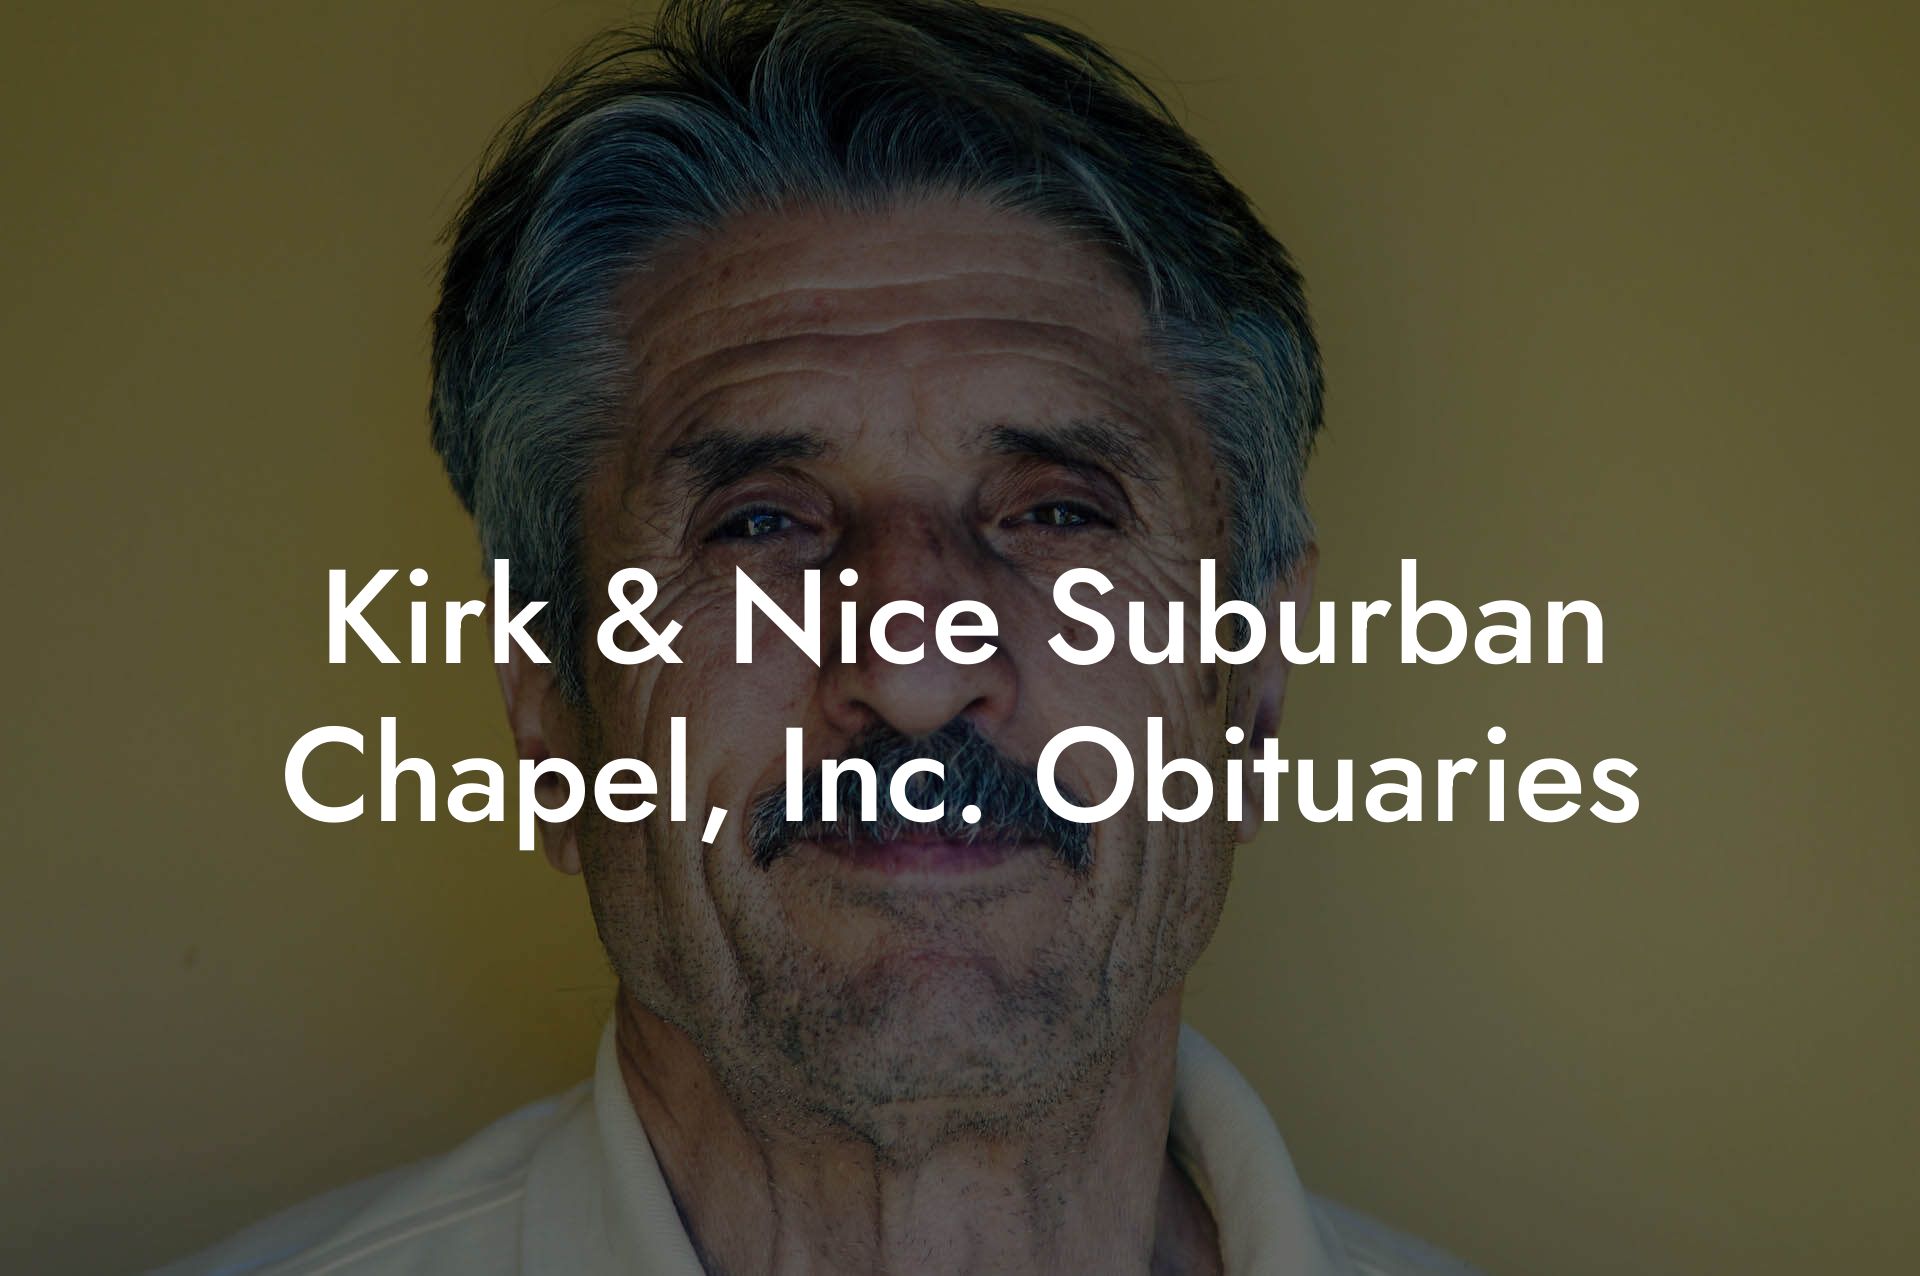 Kirk & Nice Suburban Chapel, Inc. Obituaries